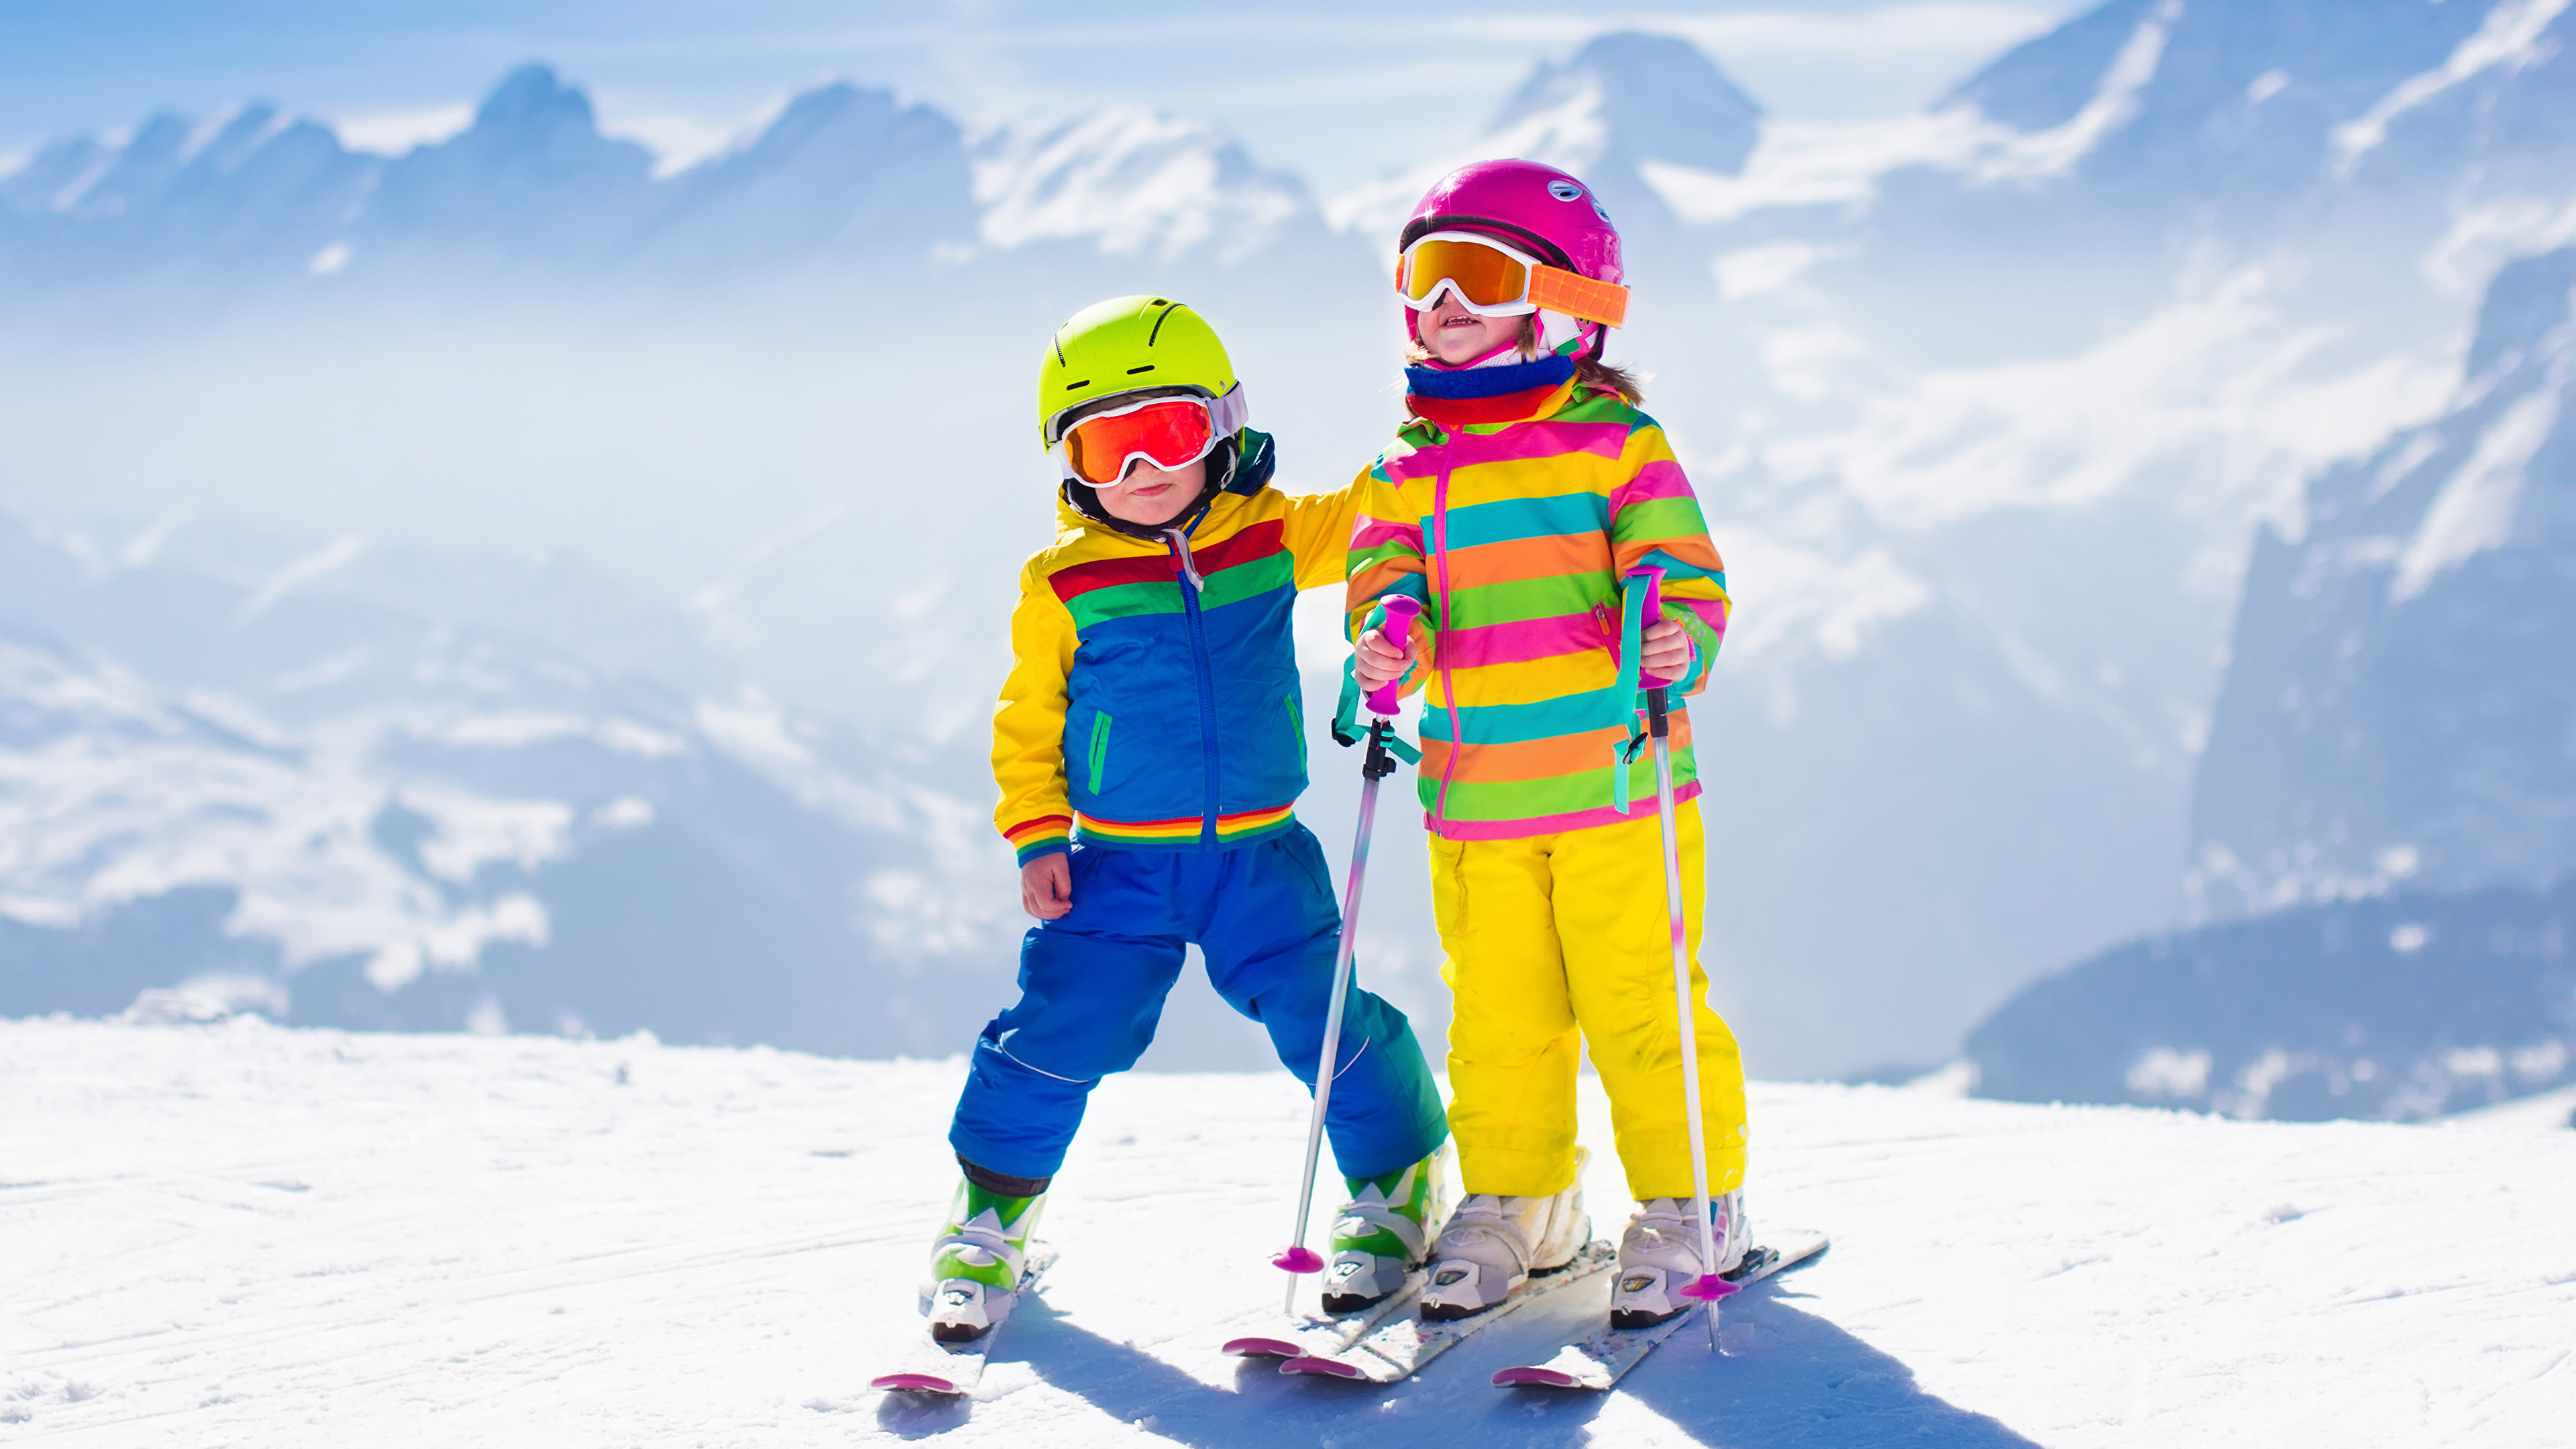 Fondos de Pantalla 3840x2160 Invierno Tabla de esquí Nieve Dos Niño Niñas  Casco Gafas Niños descargar imagenes